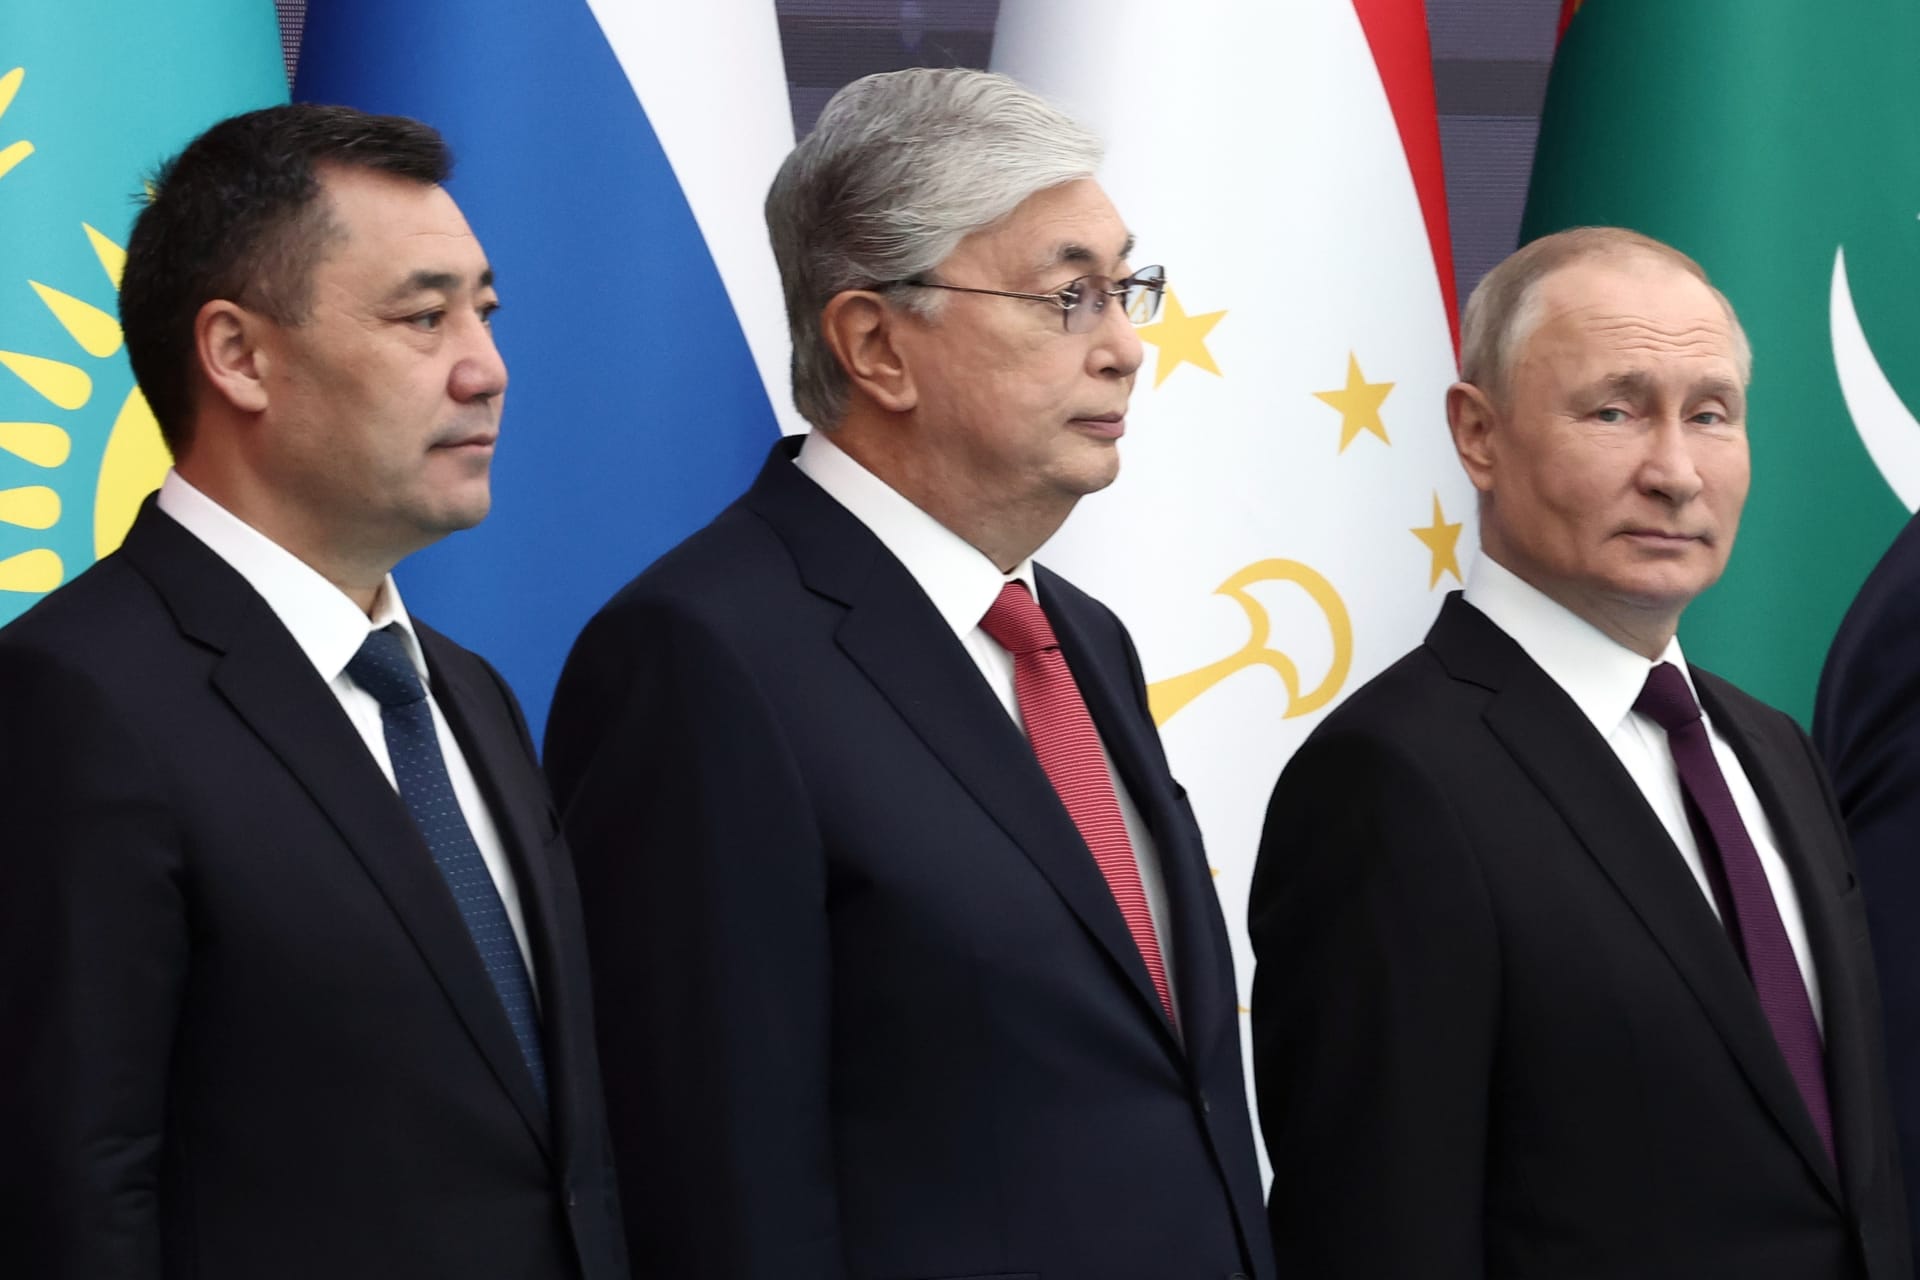 Kazašský prezident Kazym-Žomart Tokajev společně se svým ruským protějškem Vladimirem Putinem (vpravo). Vlevo pak prezident Kyrgyzstánu Sadyr Žaparov.